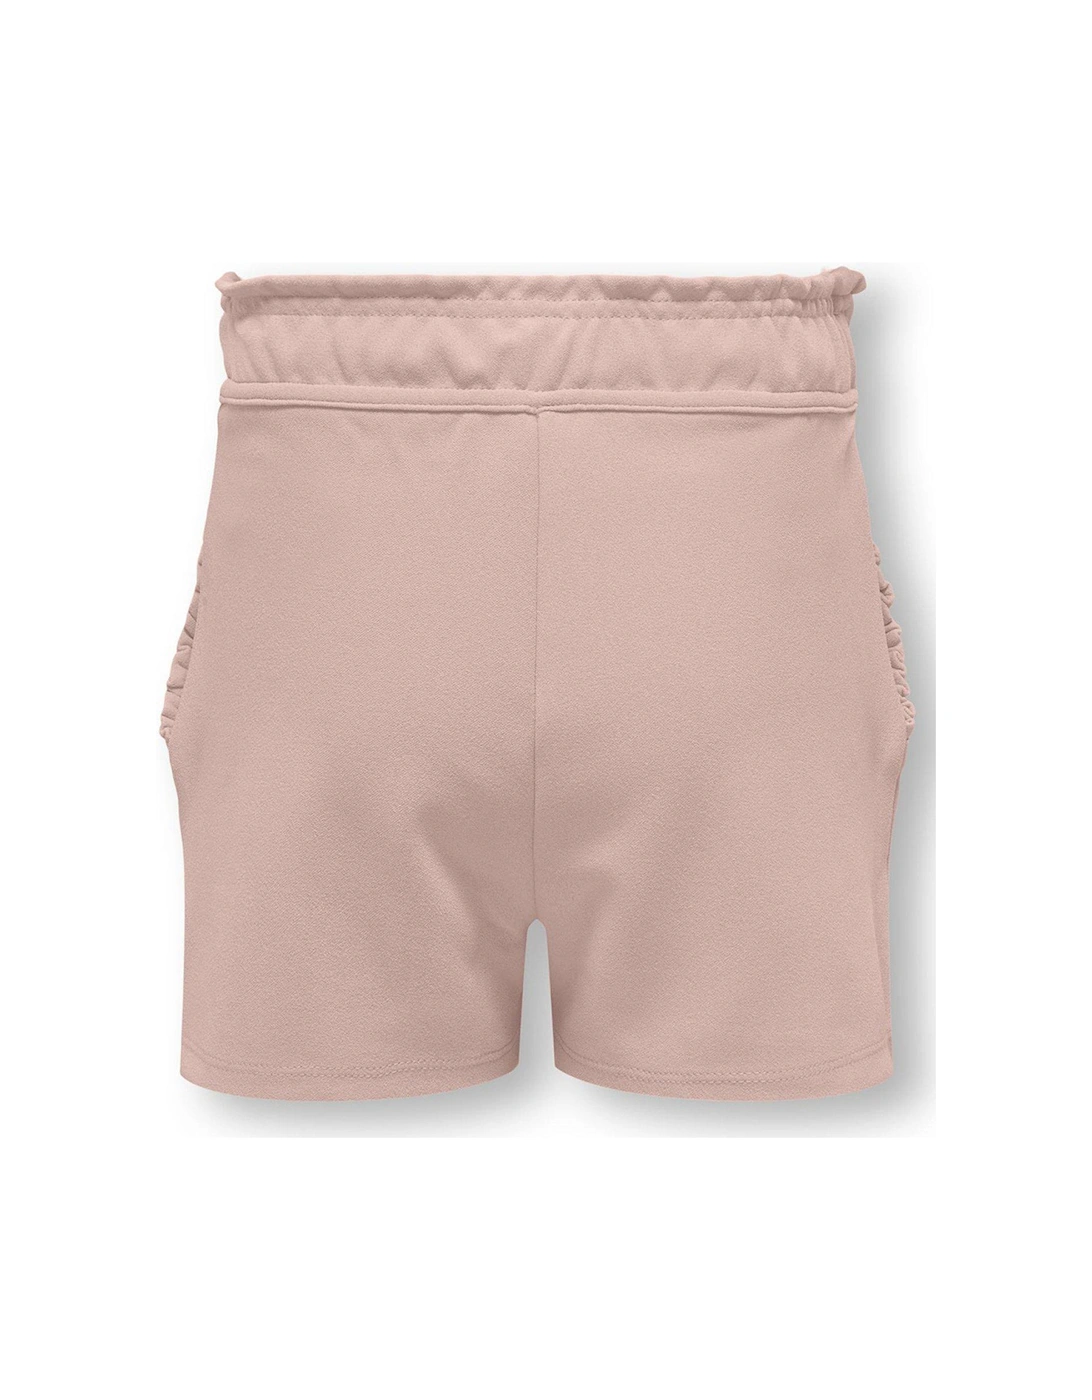 Girls Woven Frill Shorts - Light Pink